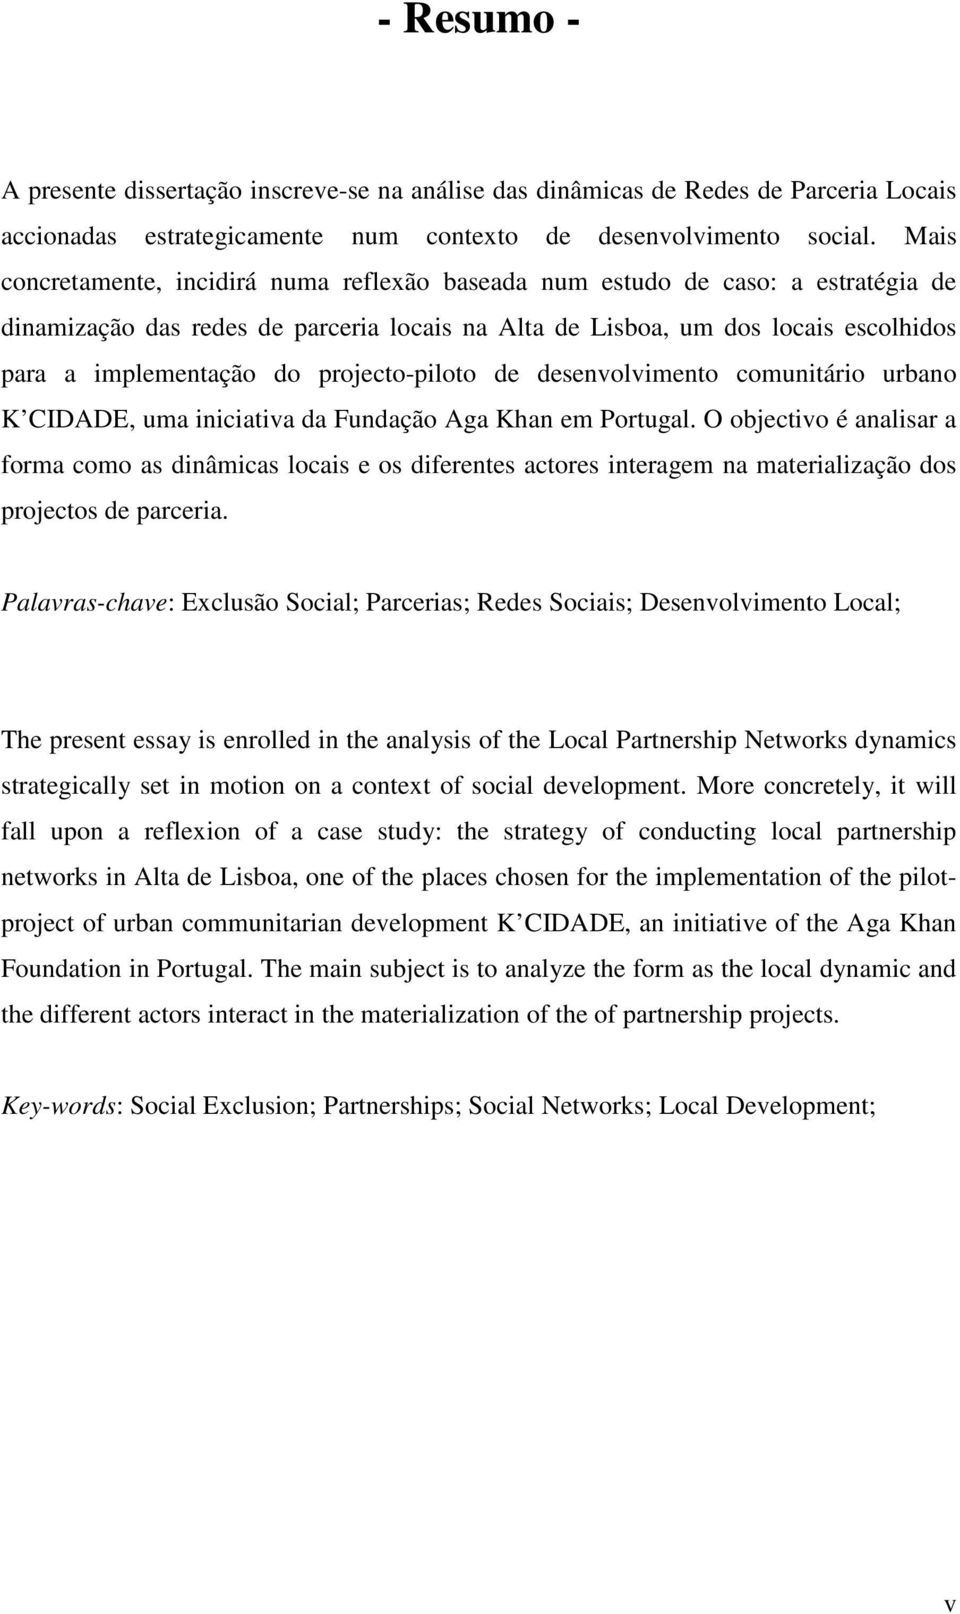 projecto-piloto de desenvolvimento comunitário urbano K CIDADE, uma iniciativa da Fundação Aga Khan em Portugal.